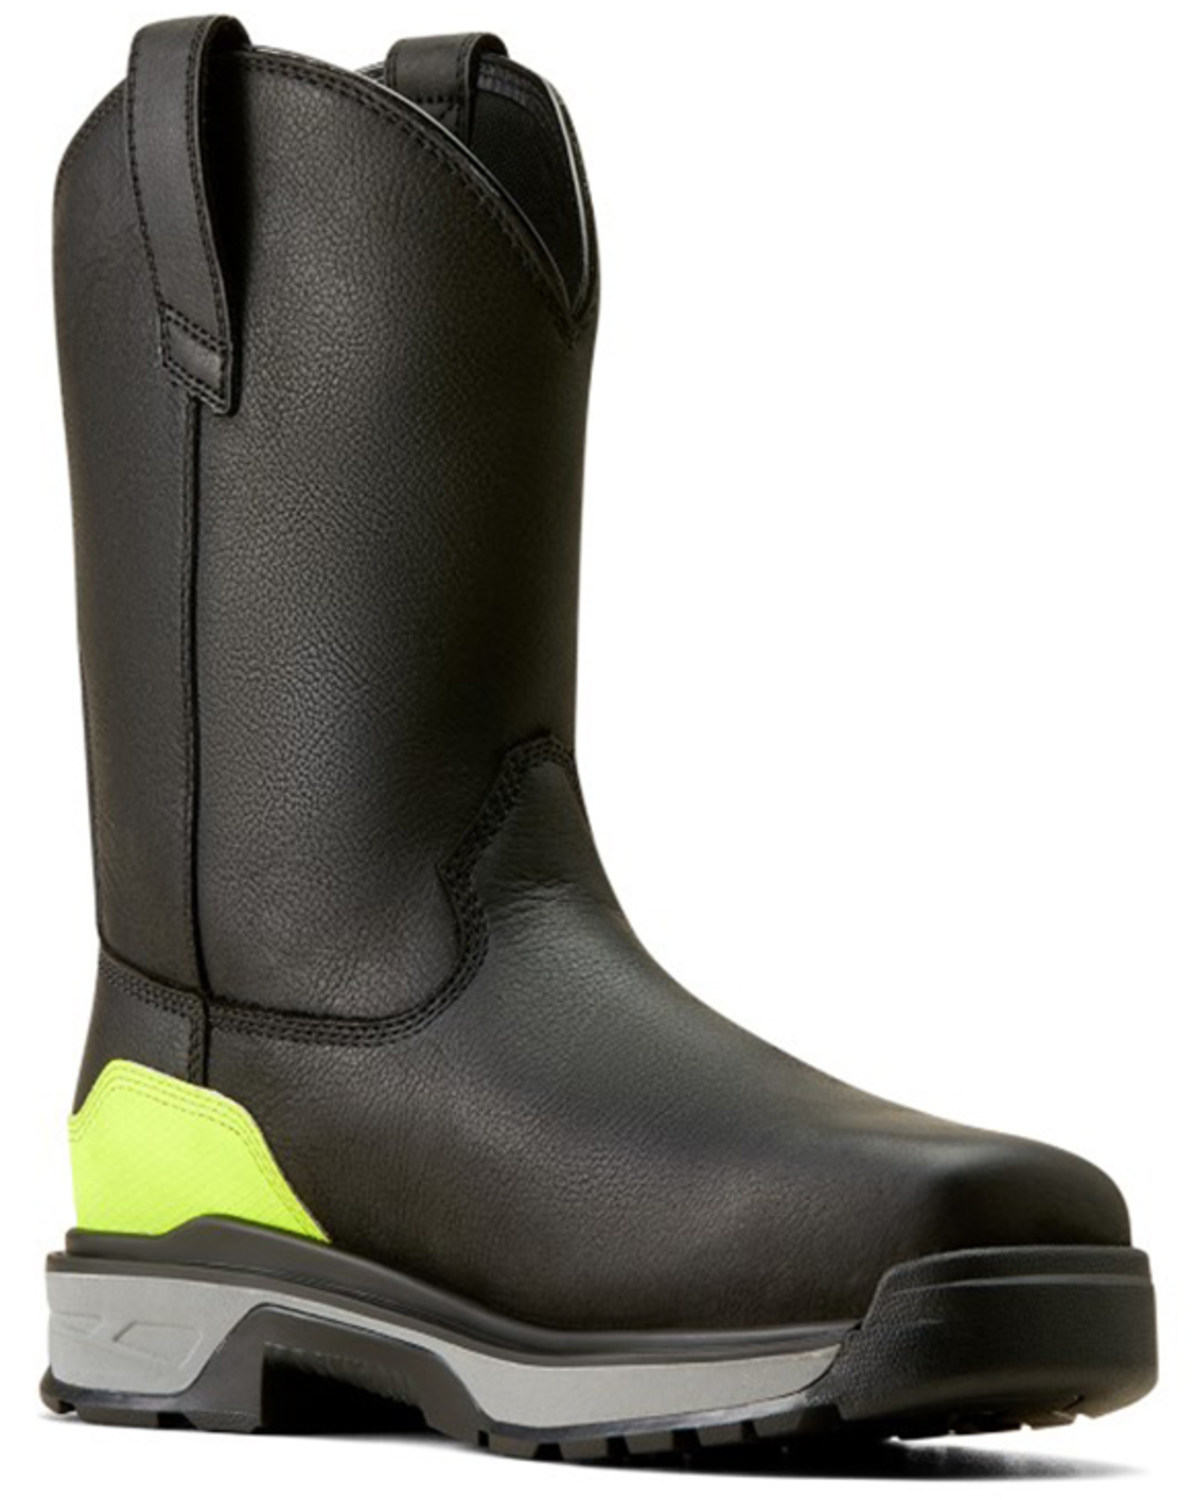 Ariat Men's Intrepid Live Wire Waterproof Work Boots - Composite Toe